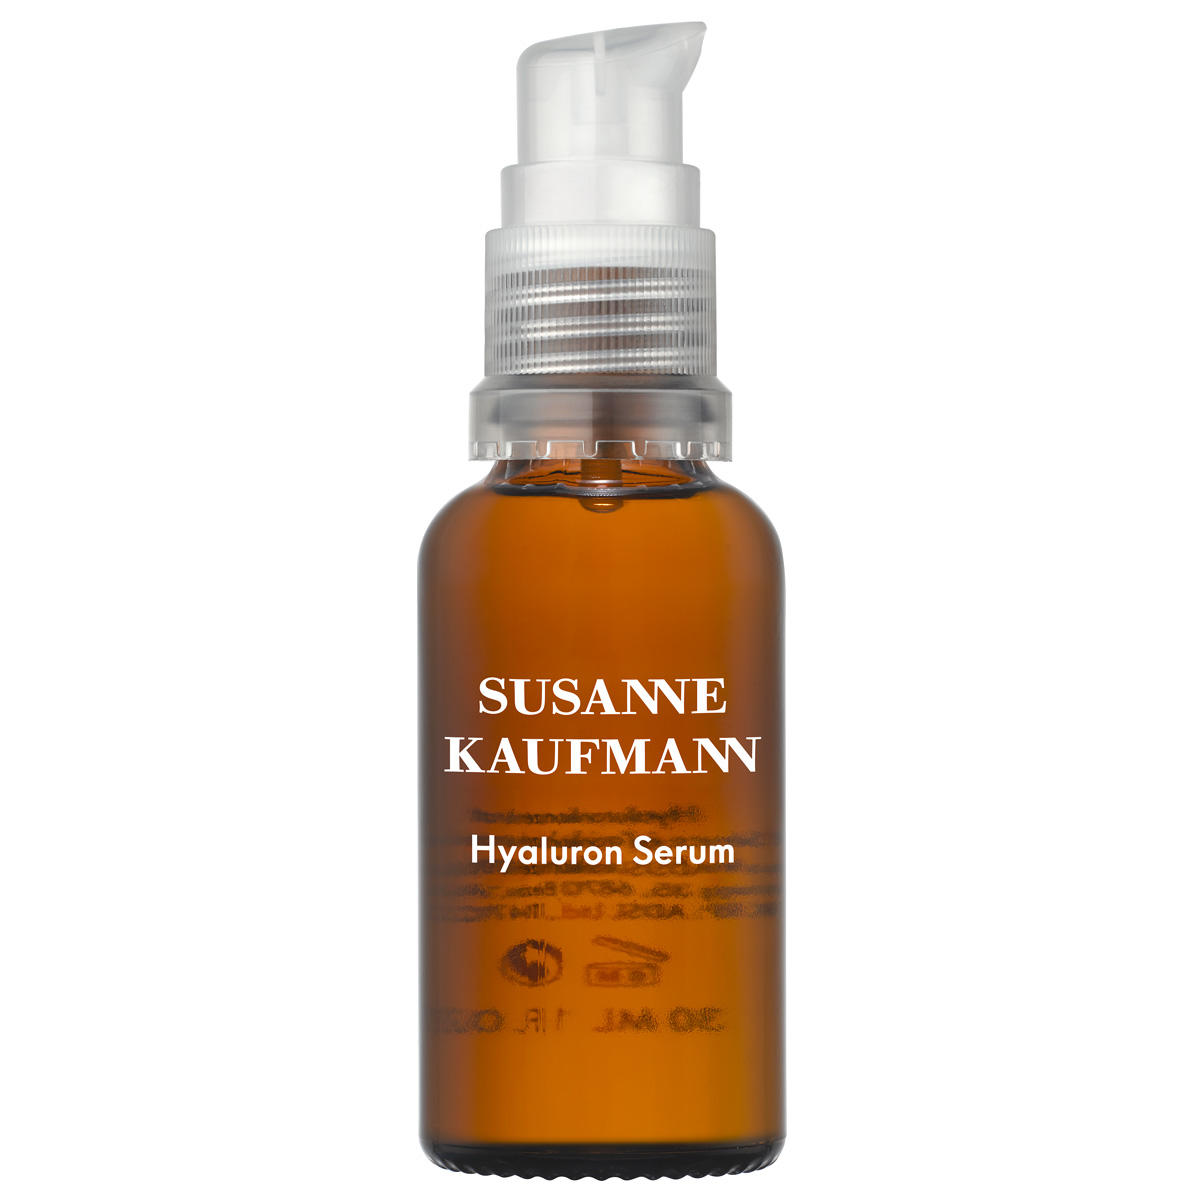 Susanne Kaufmann Hyaluron vochtinbrengend serum 30 ml - 1